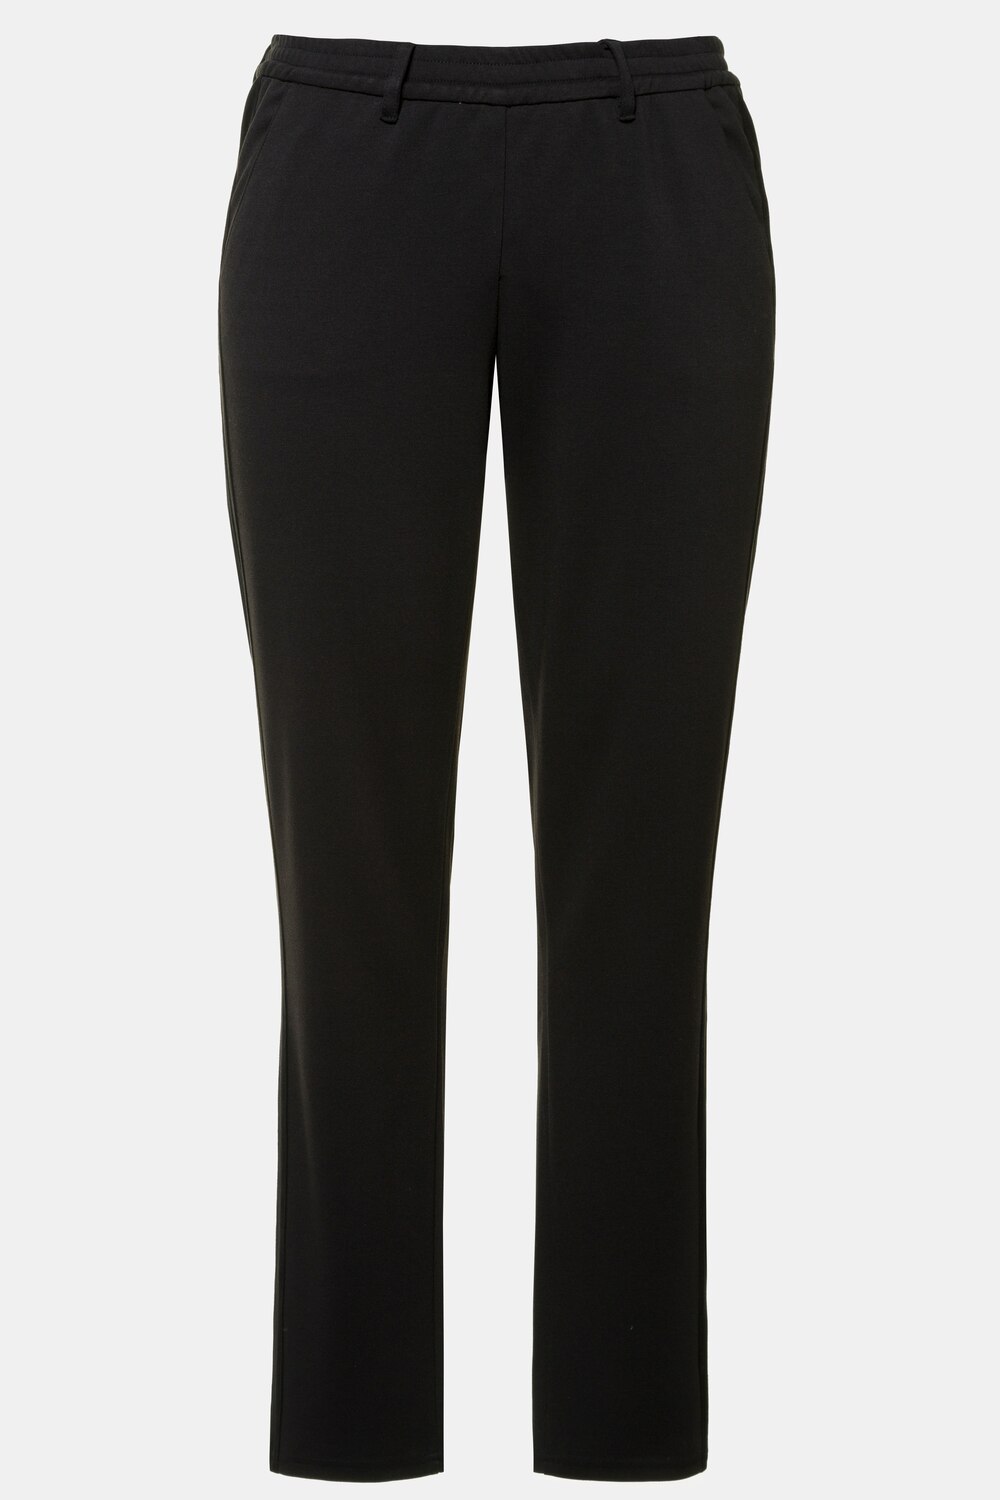 Plus Size Velour Stripe Ponte Knit Sienna Fit Slim Leg Pants, Woman, black, size: 28/30, polyester/viscose, Ulla Popken